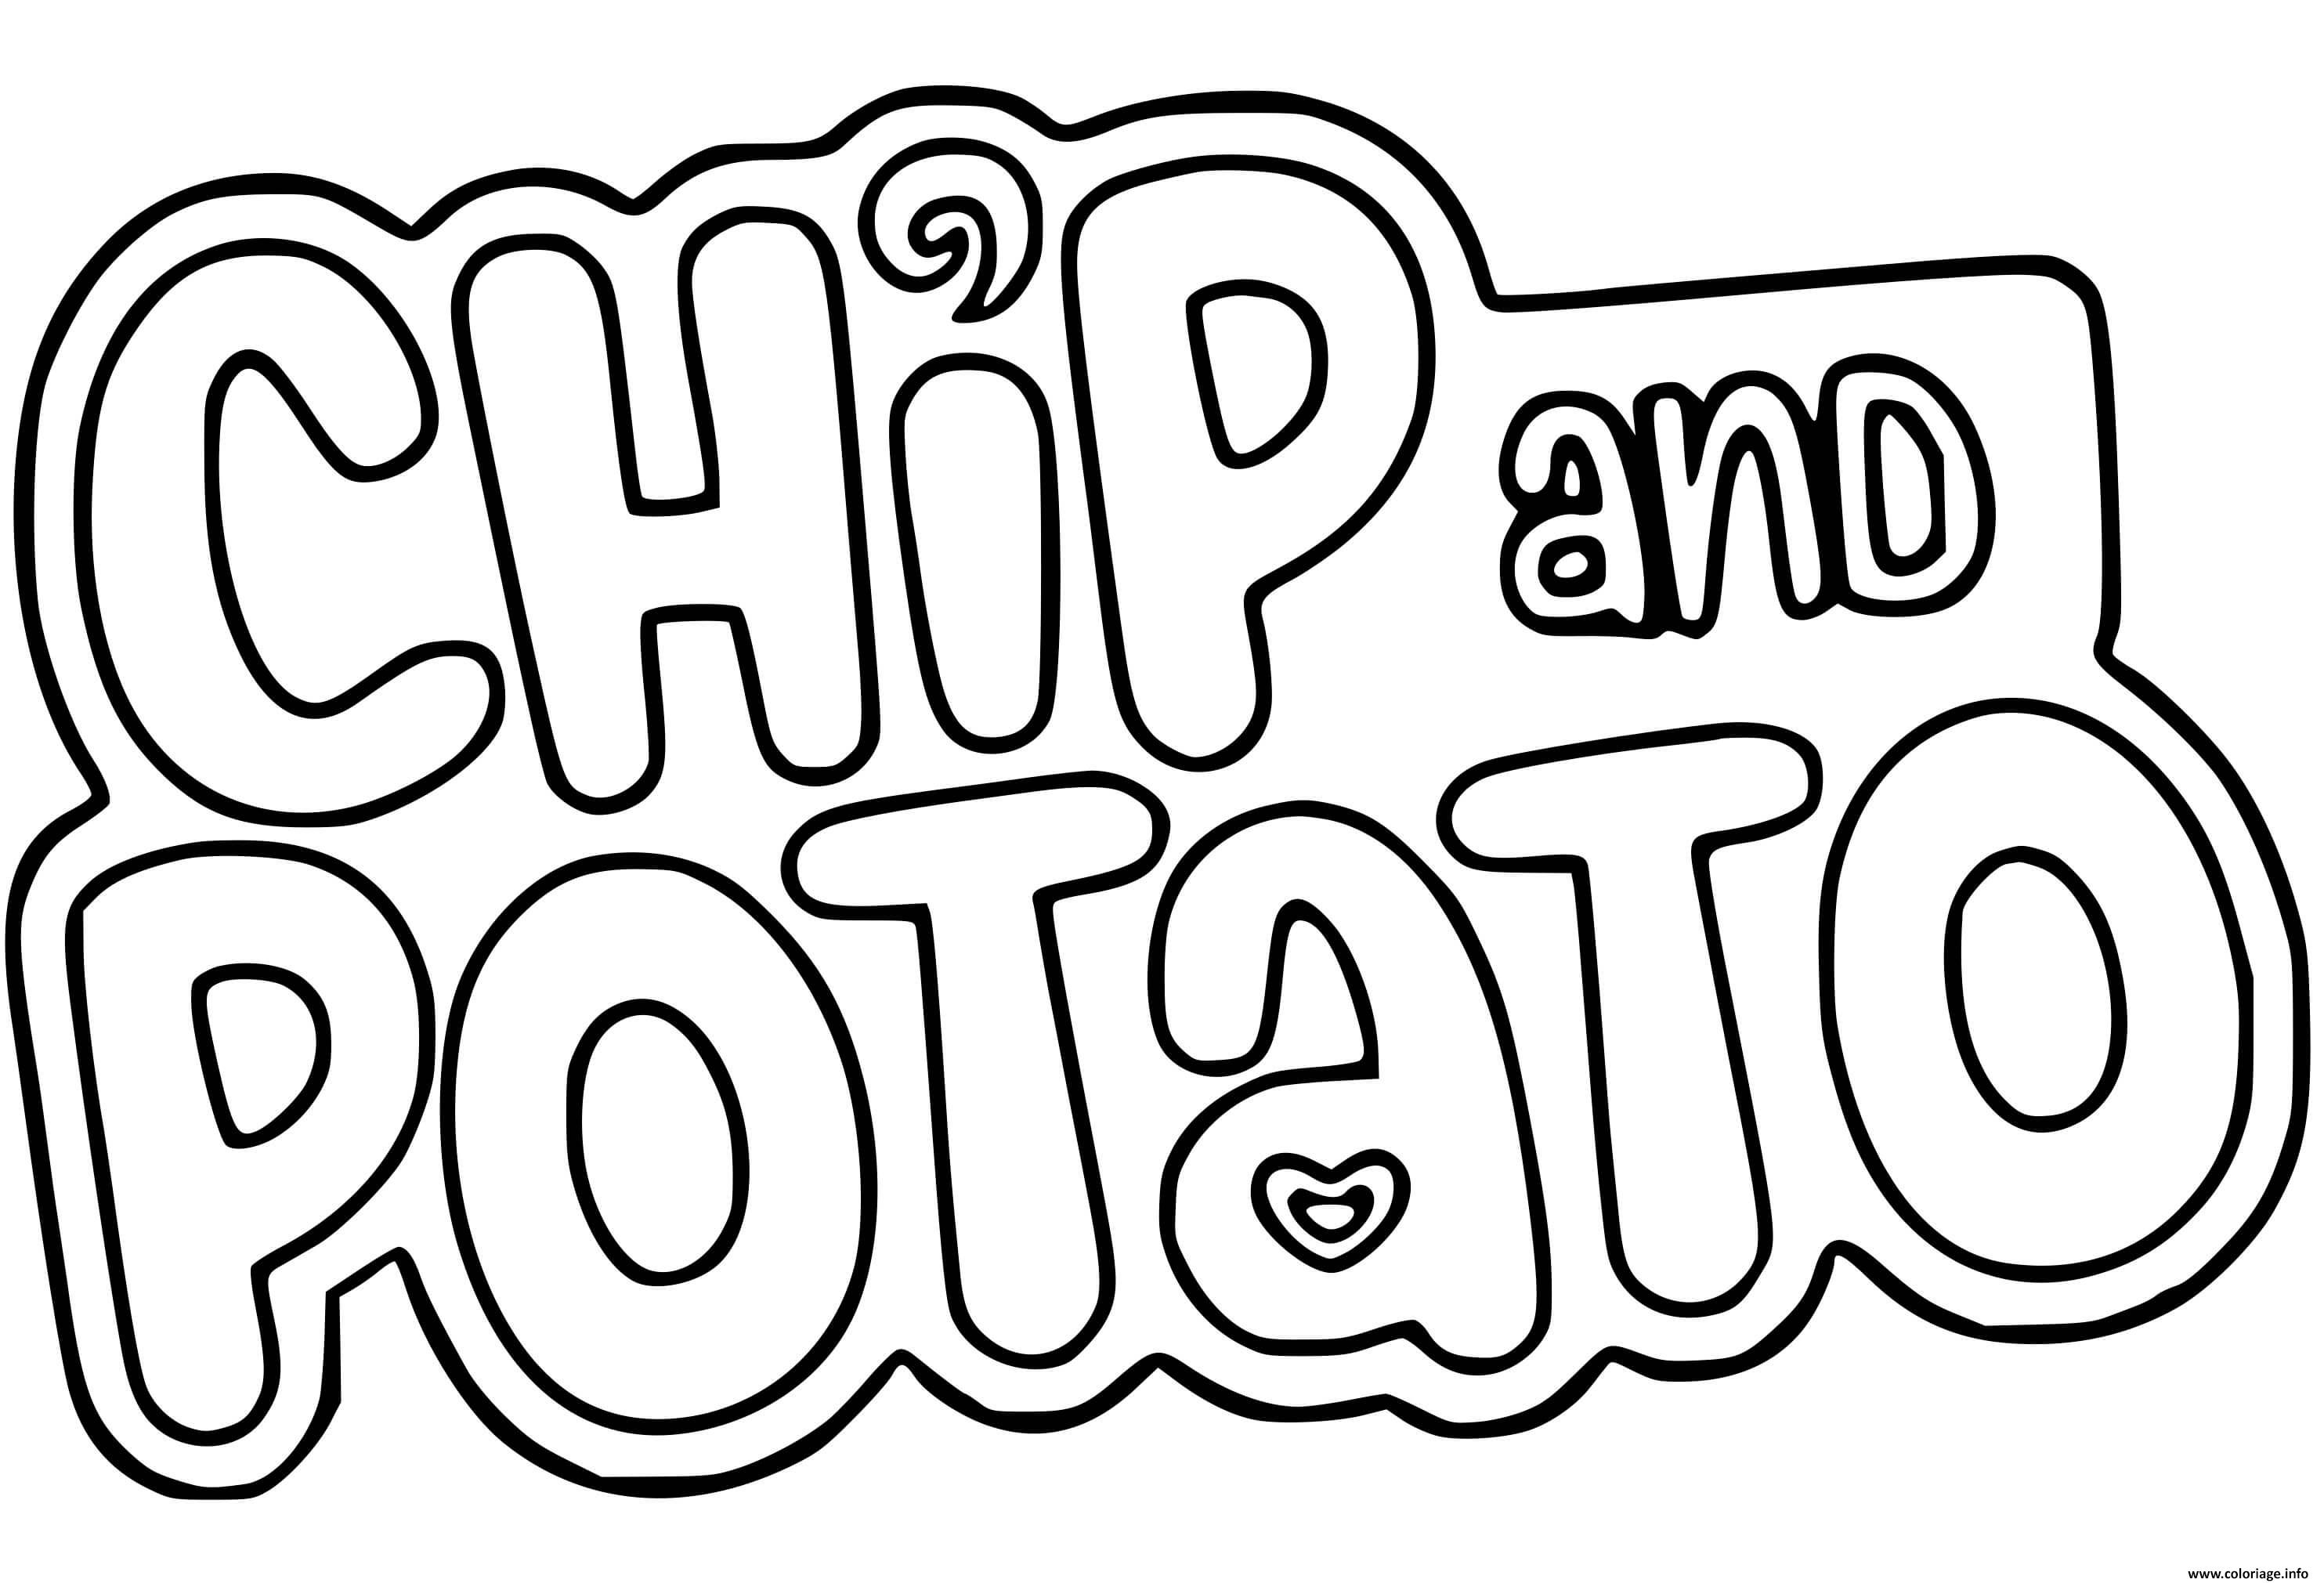 Dessin logo chip et patate chip and potato Coloriage Gratuit à Imprimer